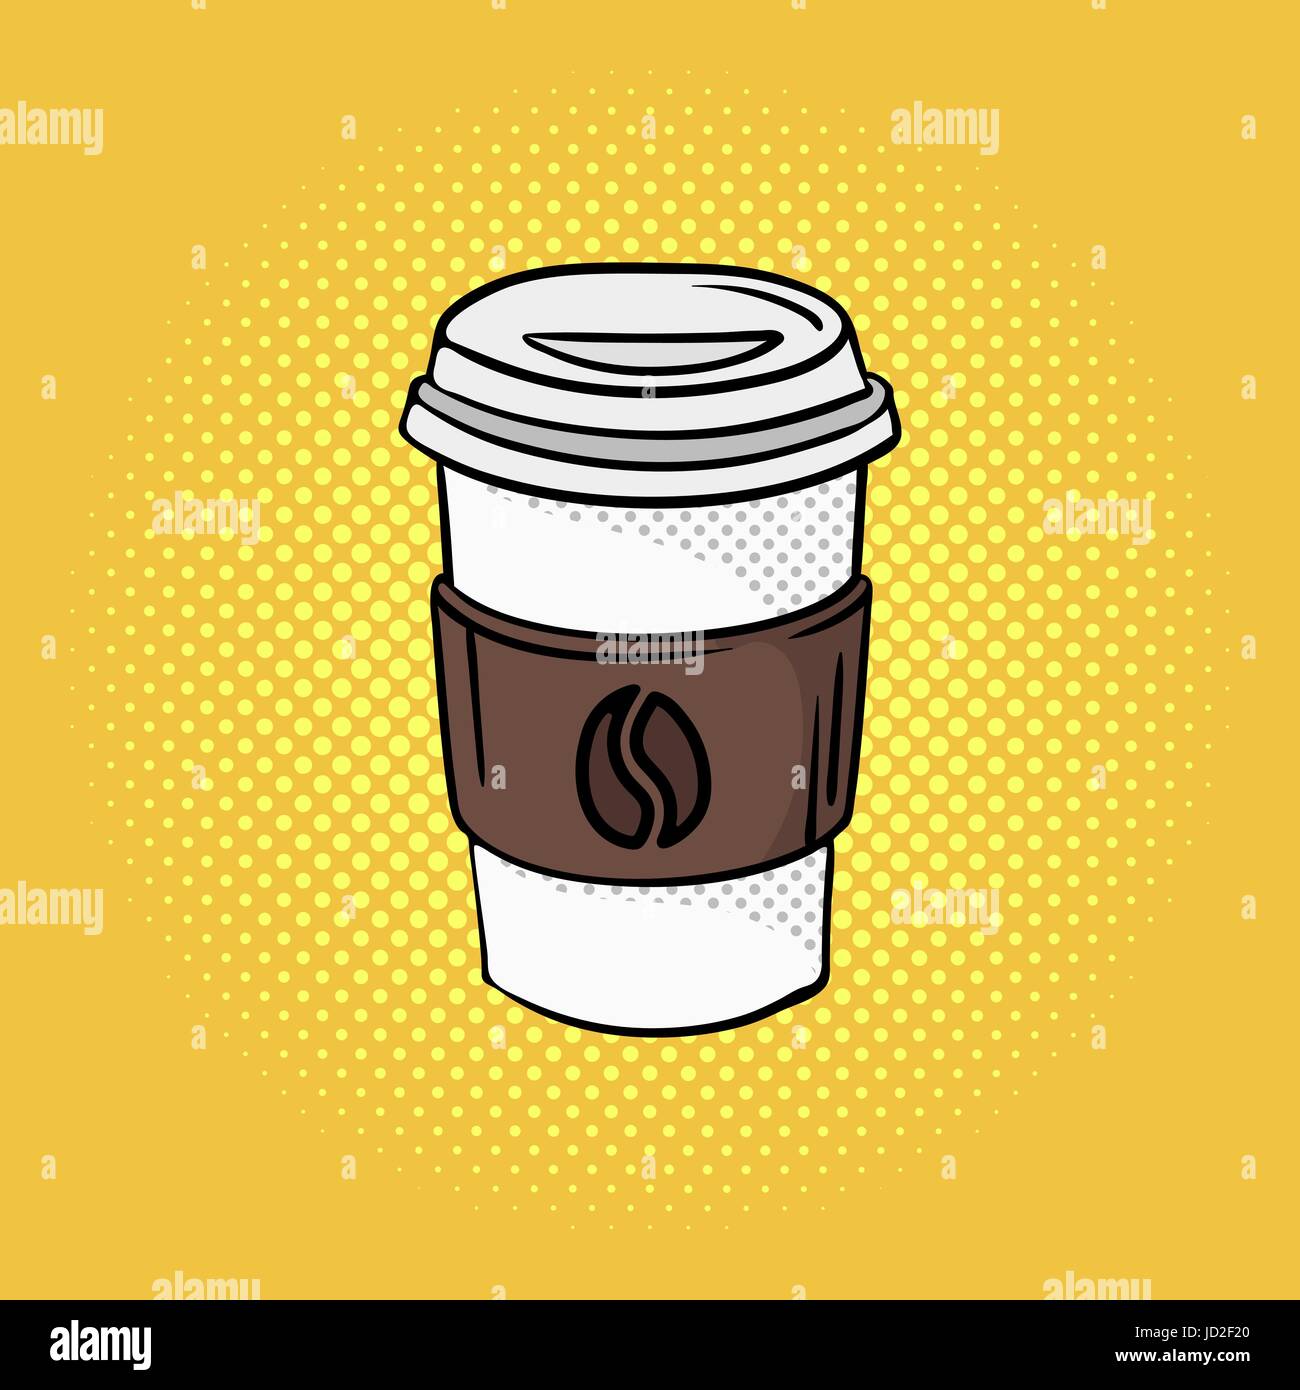 Vektor handgezeichneten Pop-Art Abbildung Kaffee für unterwegs. Fast-Food. Retro-Stil. Gezeichnete Handzeichen. Illustration für print, Web. Stock Vektor